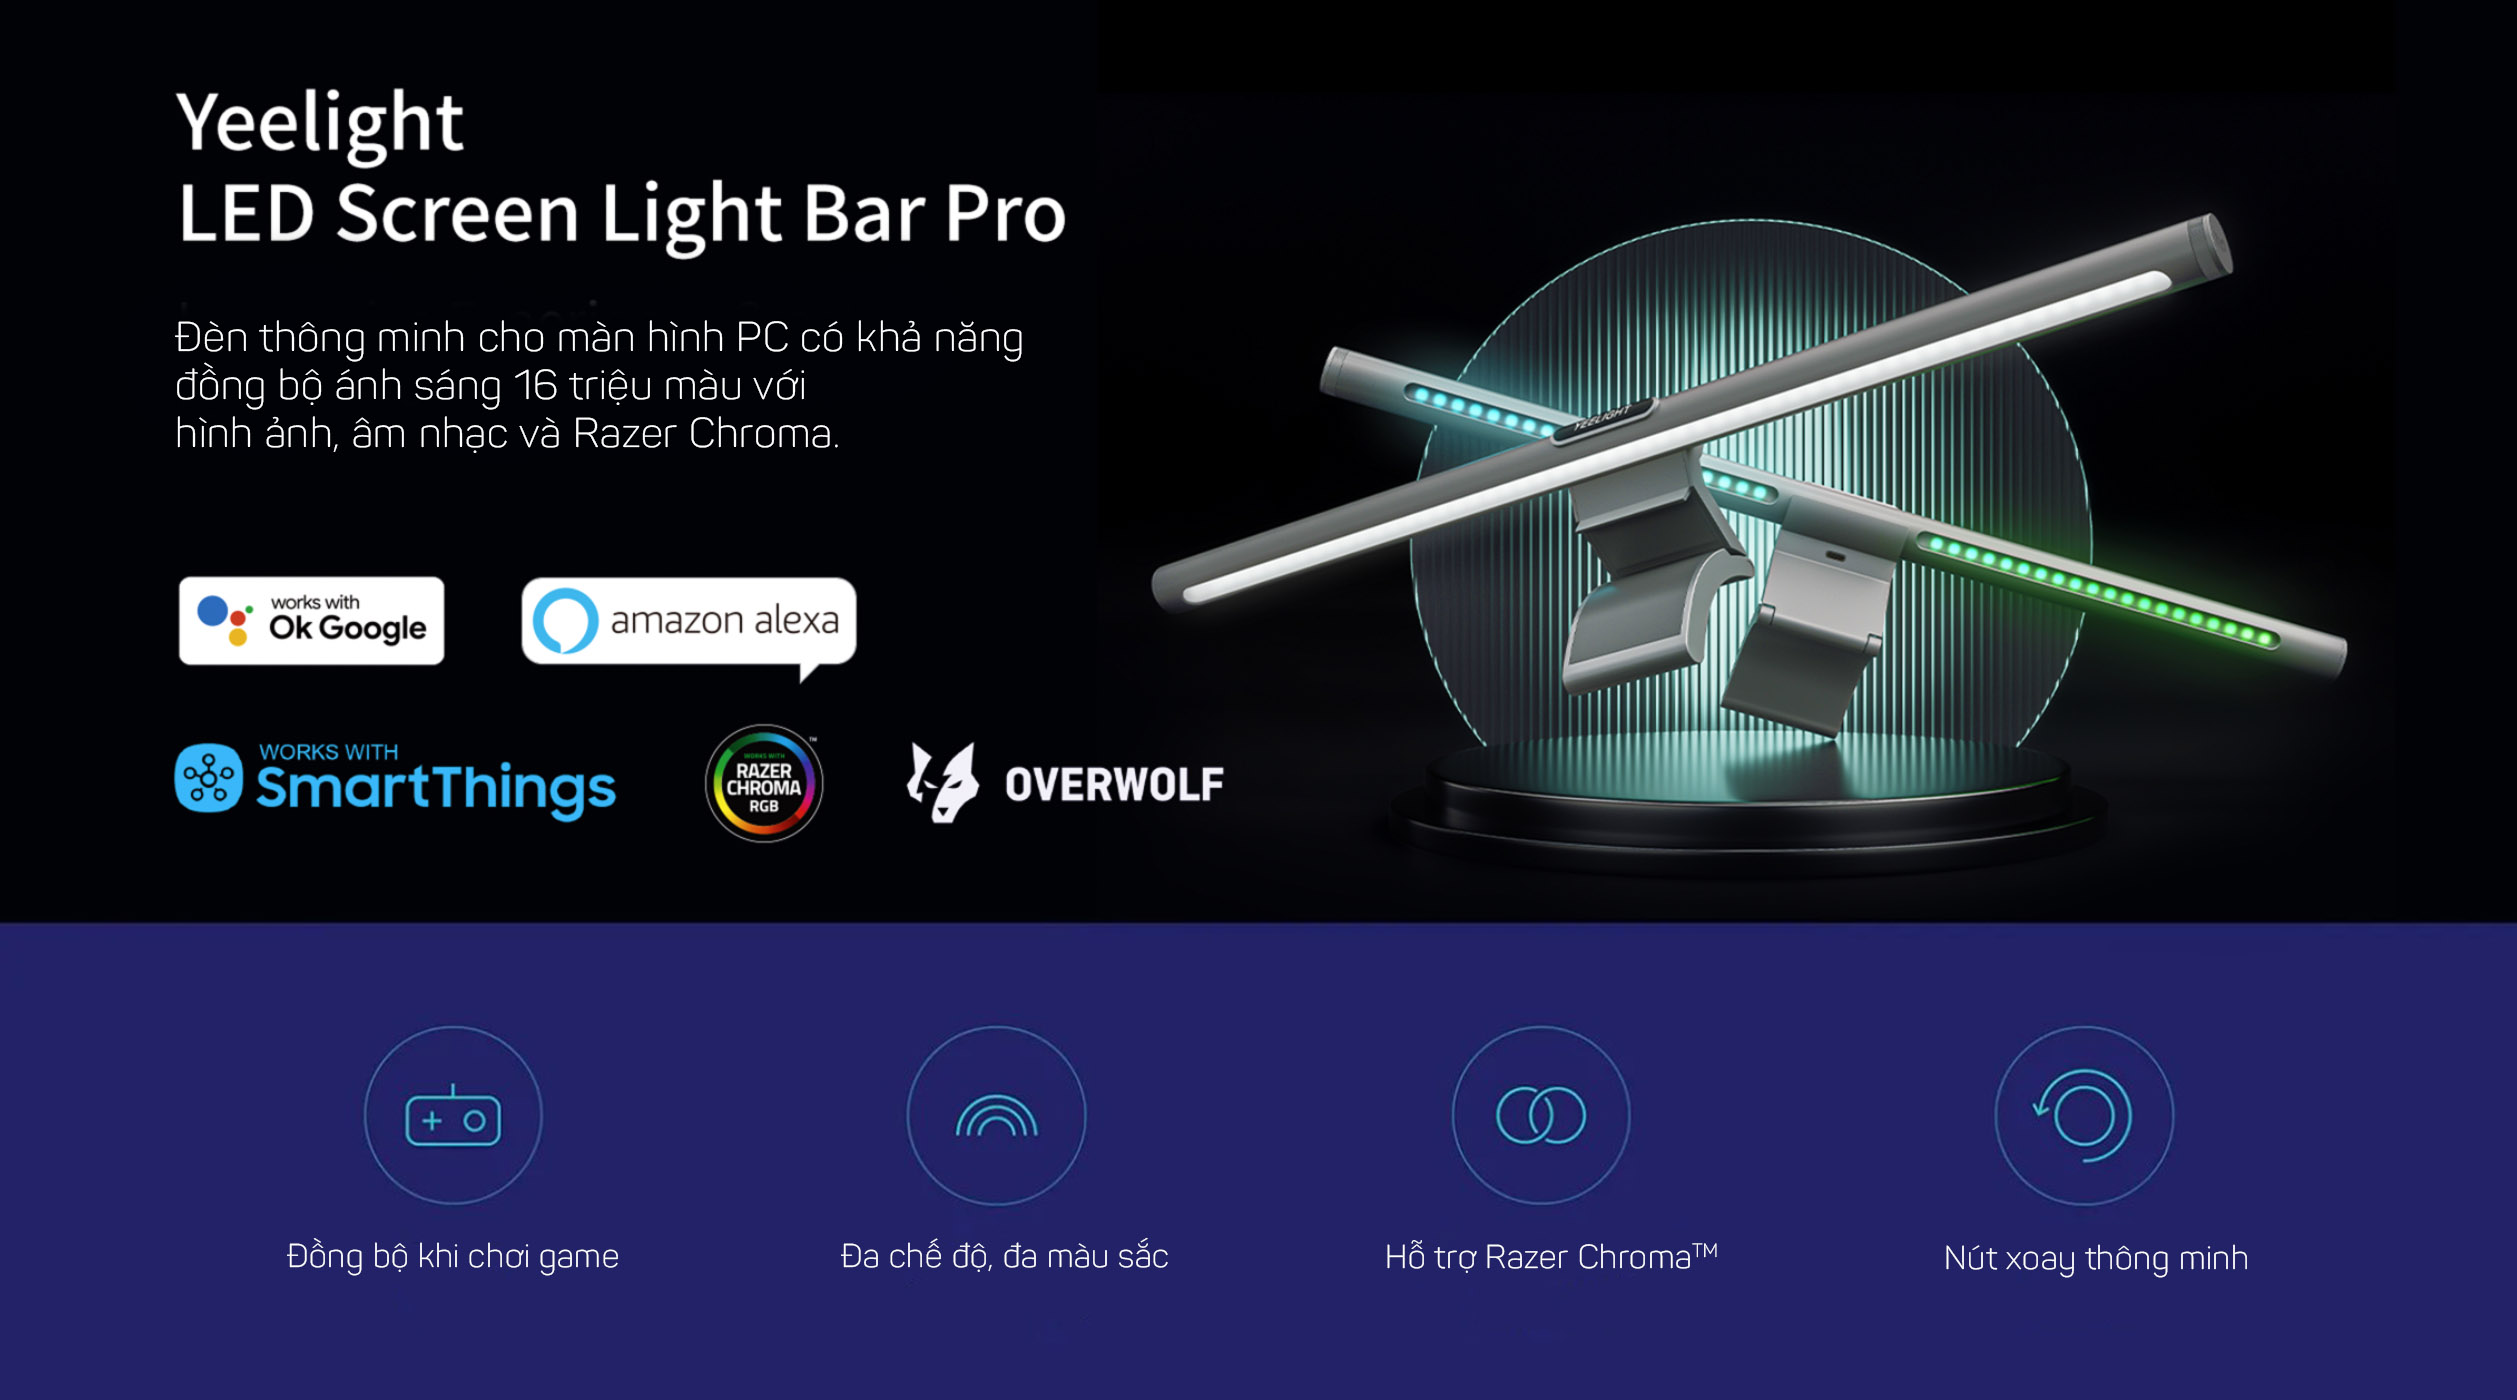 Yeelight LED Screen Light Bar Pro 1